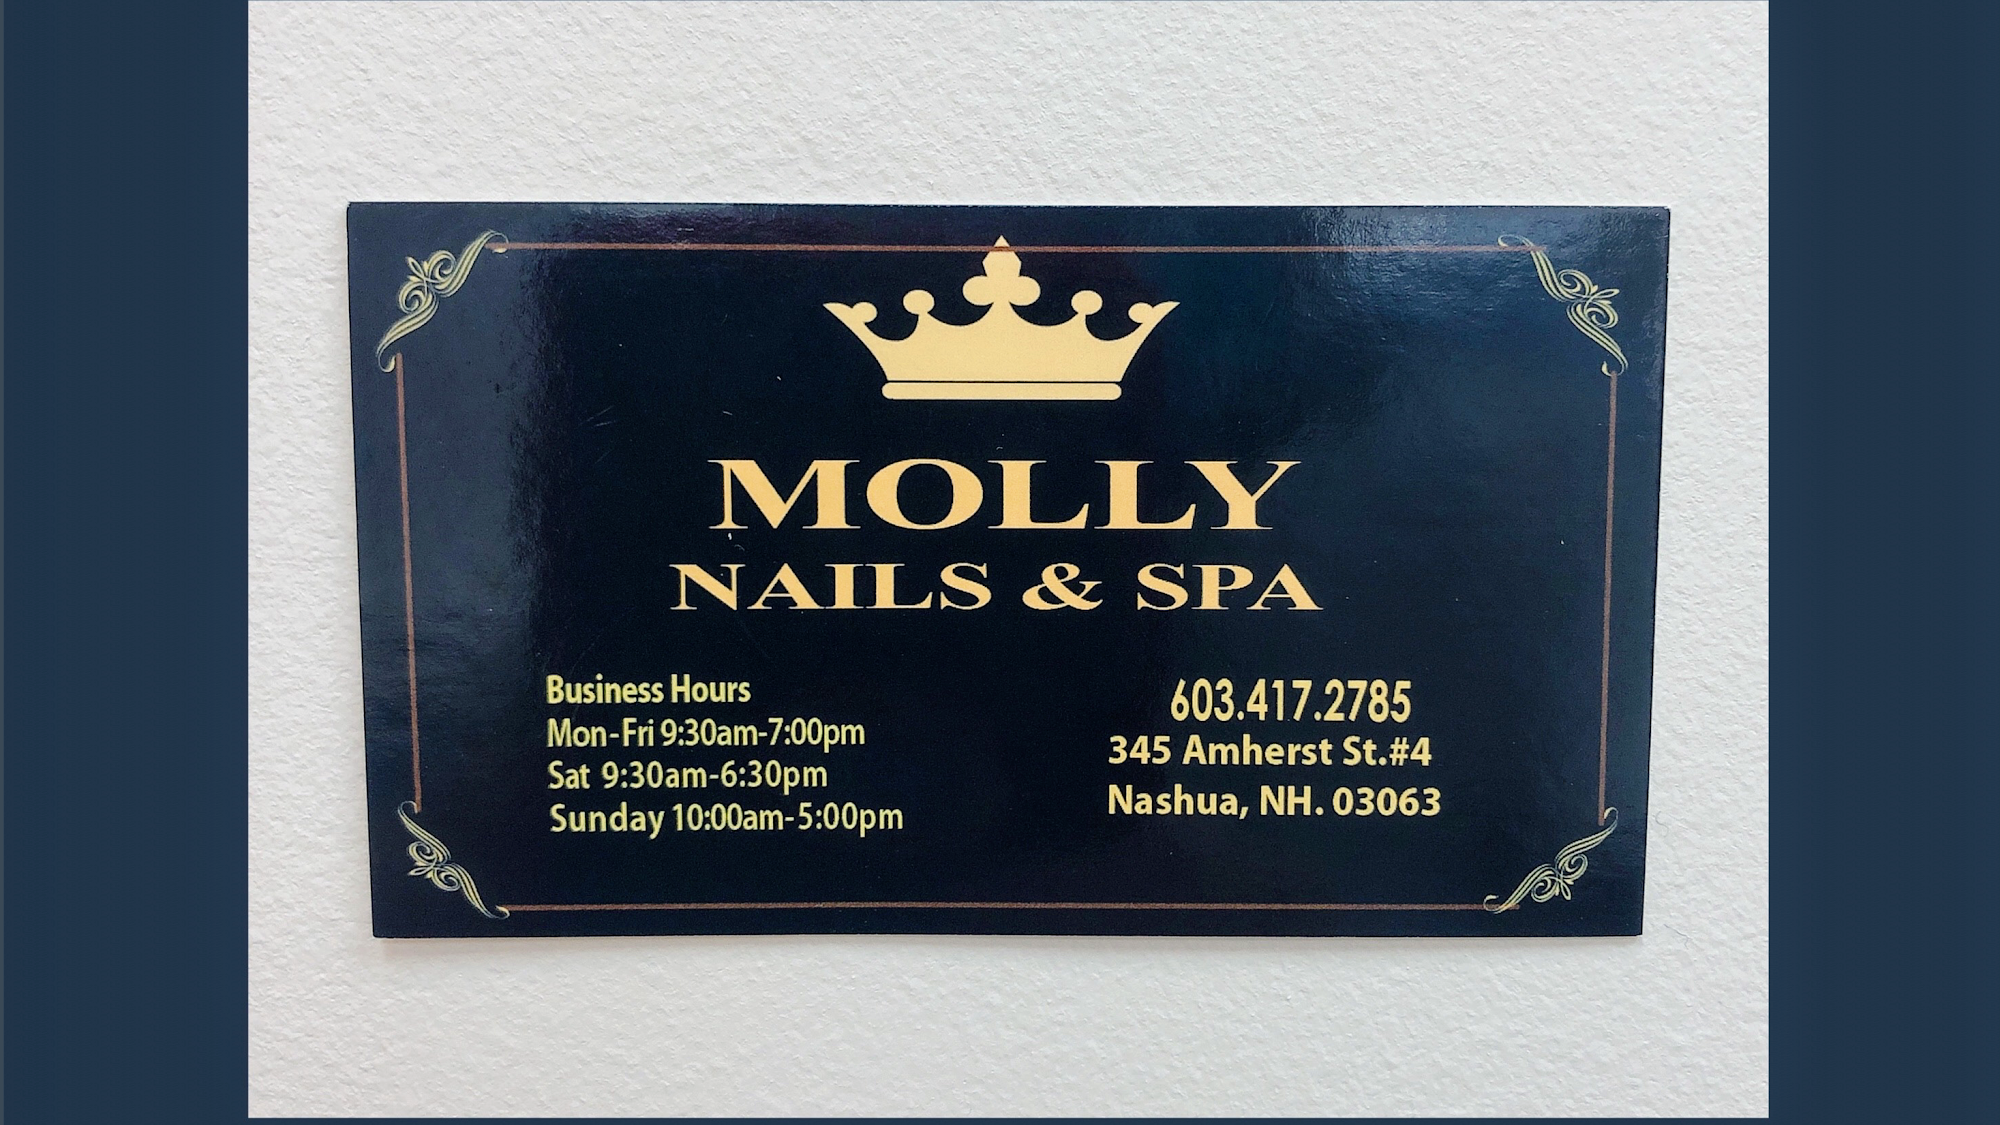 Molly nails&spa